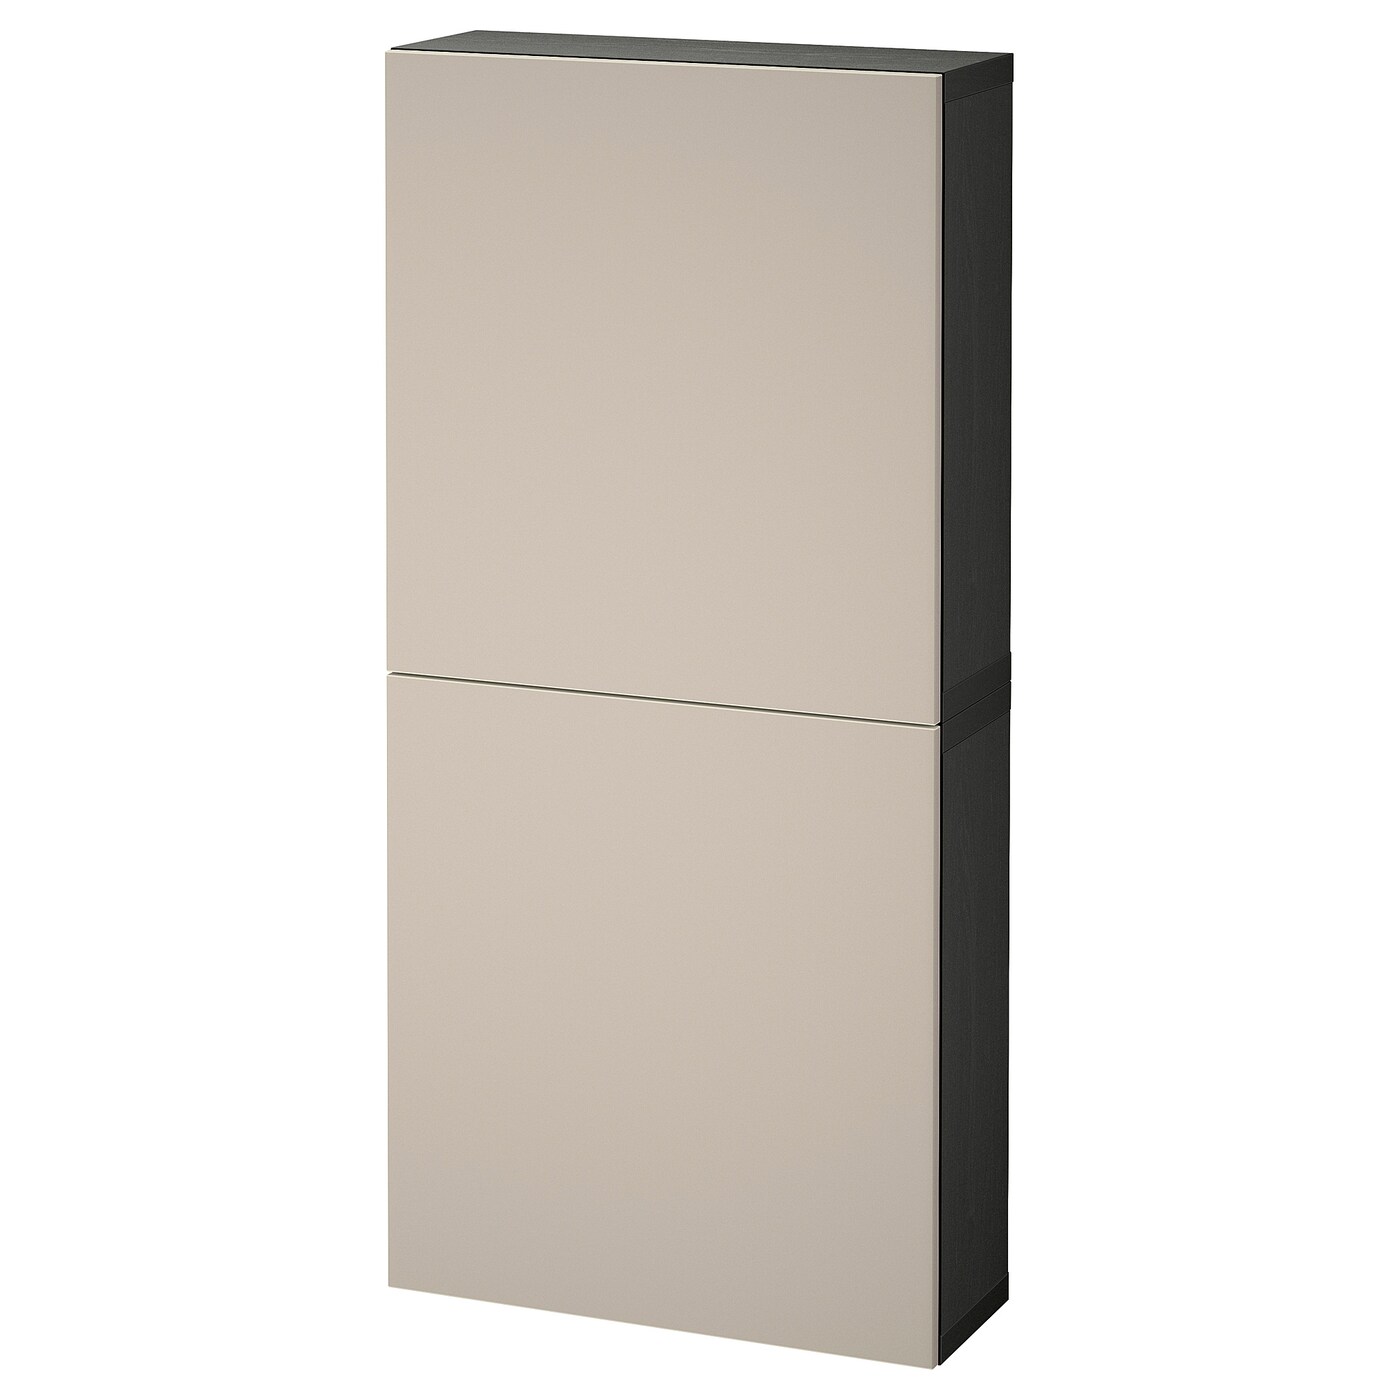 Навесной шкаф - IKEA BESTÅ/BESTA, 60x22x128 см, серый, Бесто ИКЕА